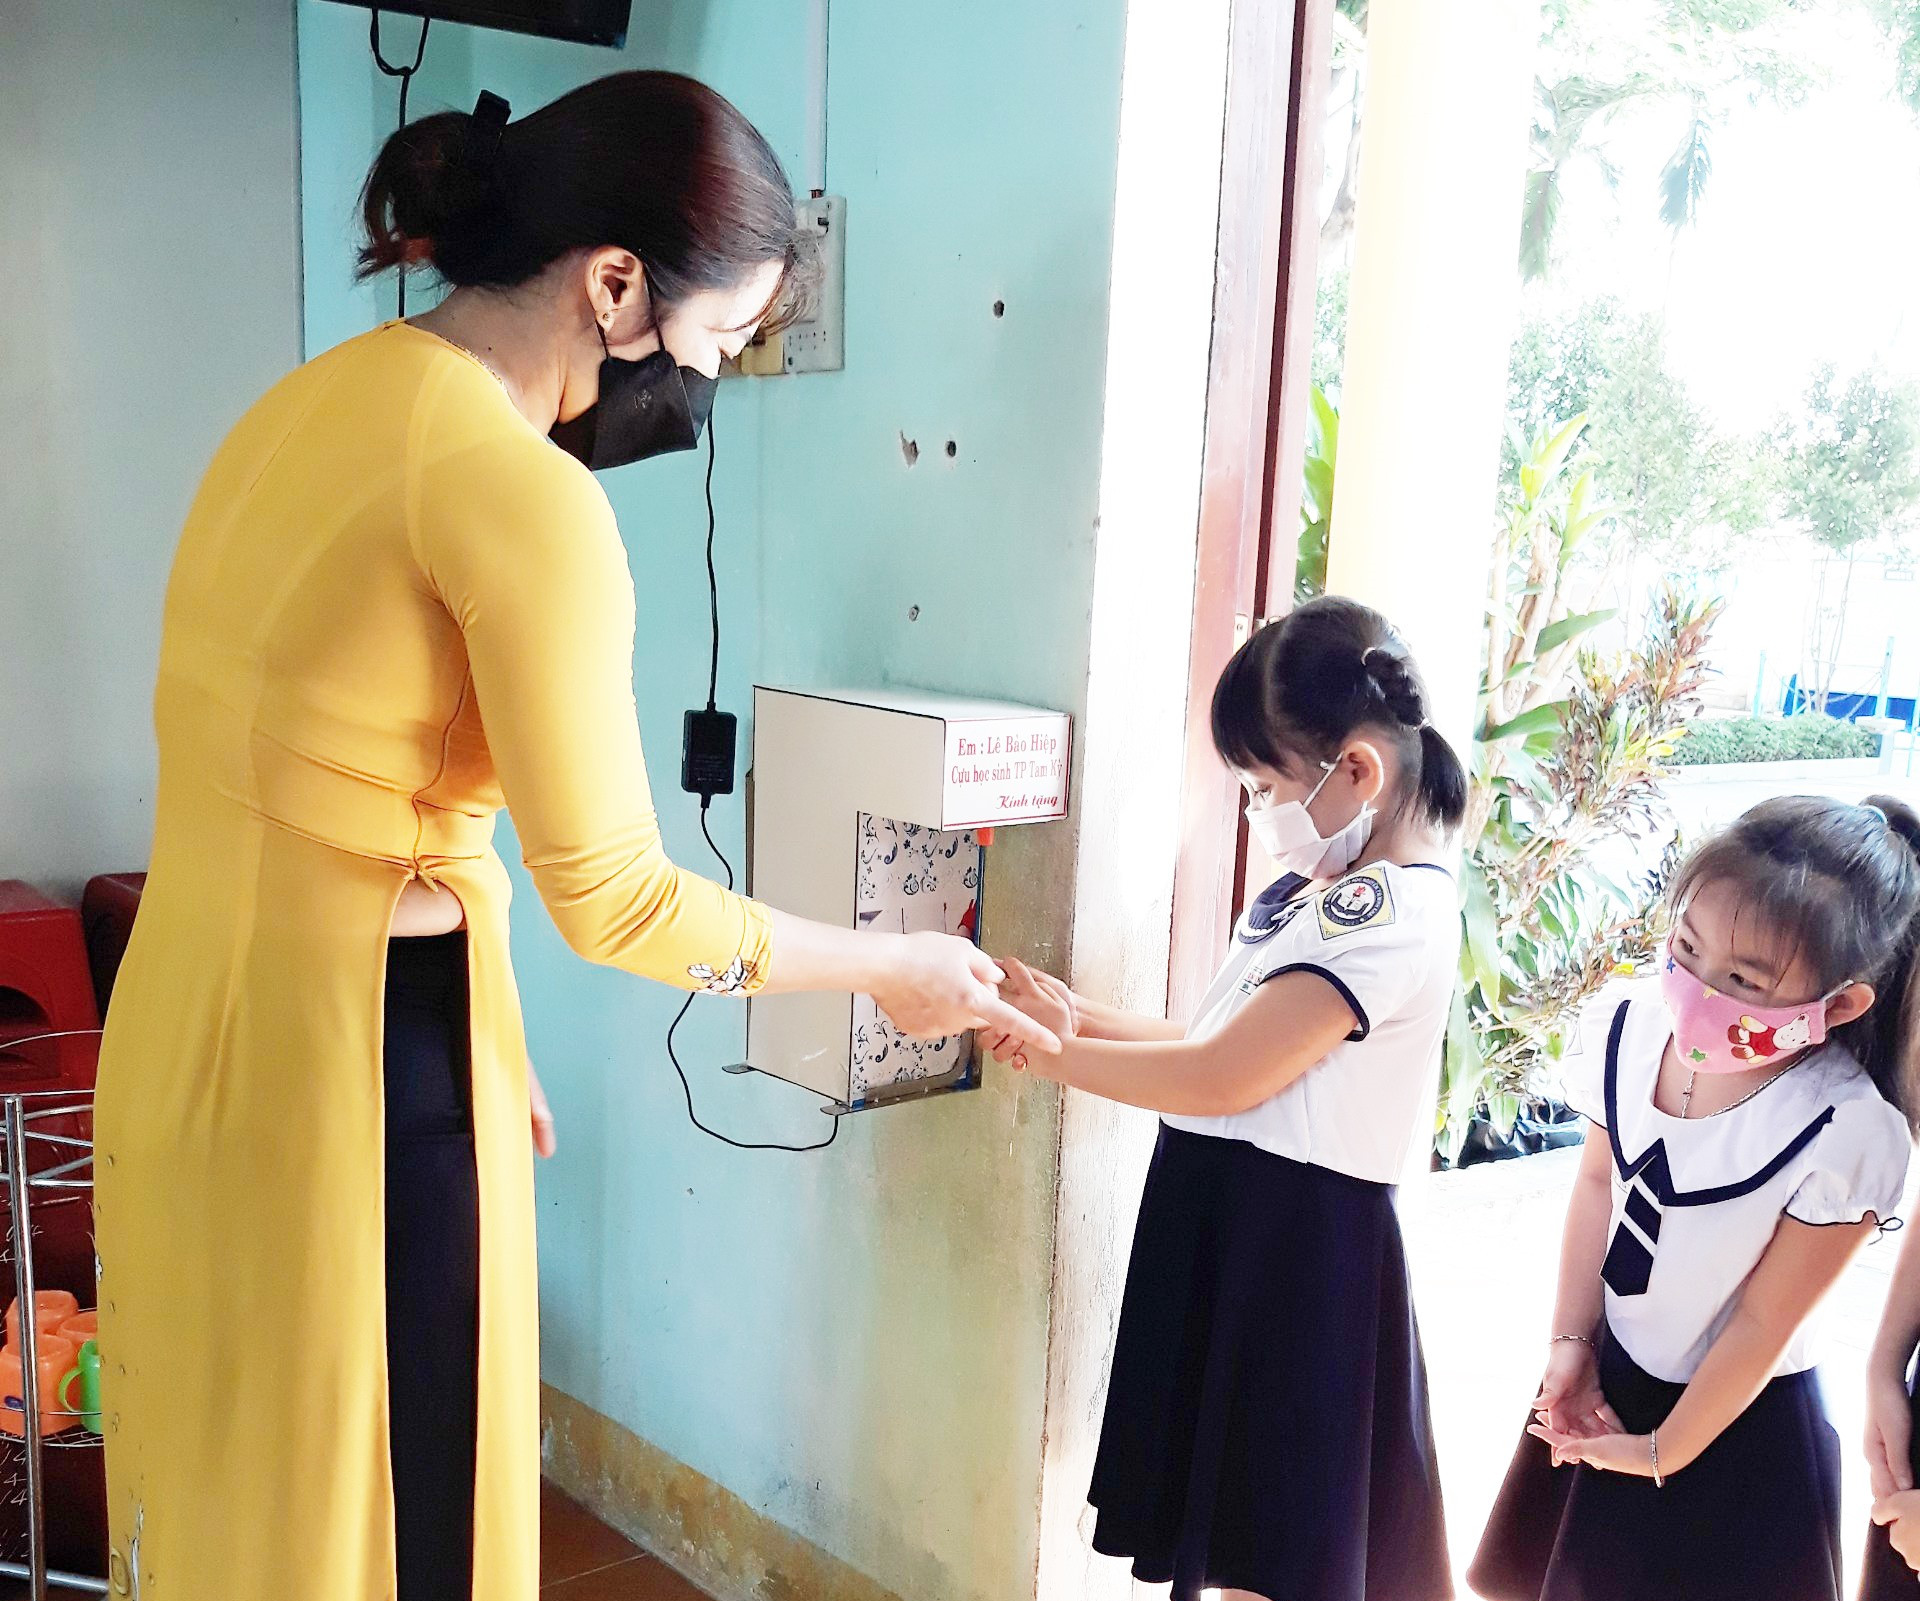 Học sinh lớp 1 Trường Tiểu học Nguyễn Thị Minh Khai (Tam Kỳ) sử dụng máy rửa tay cảm ứng do Lê Bảo Hiệp tặng. Ảnh: G.V